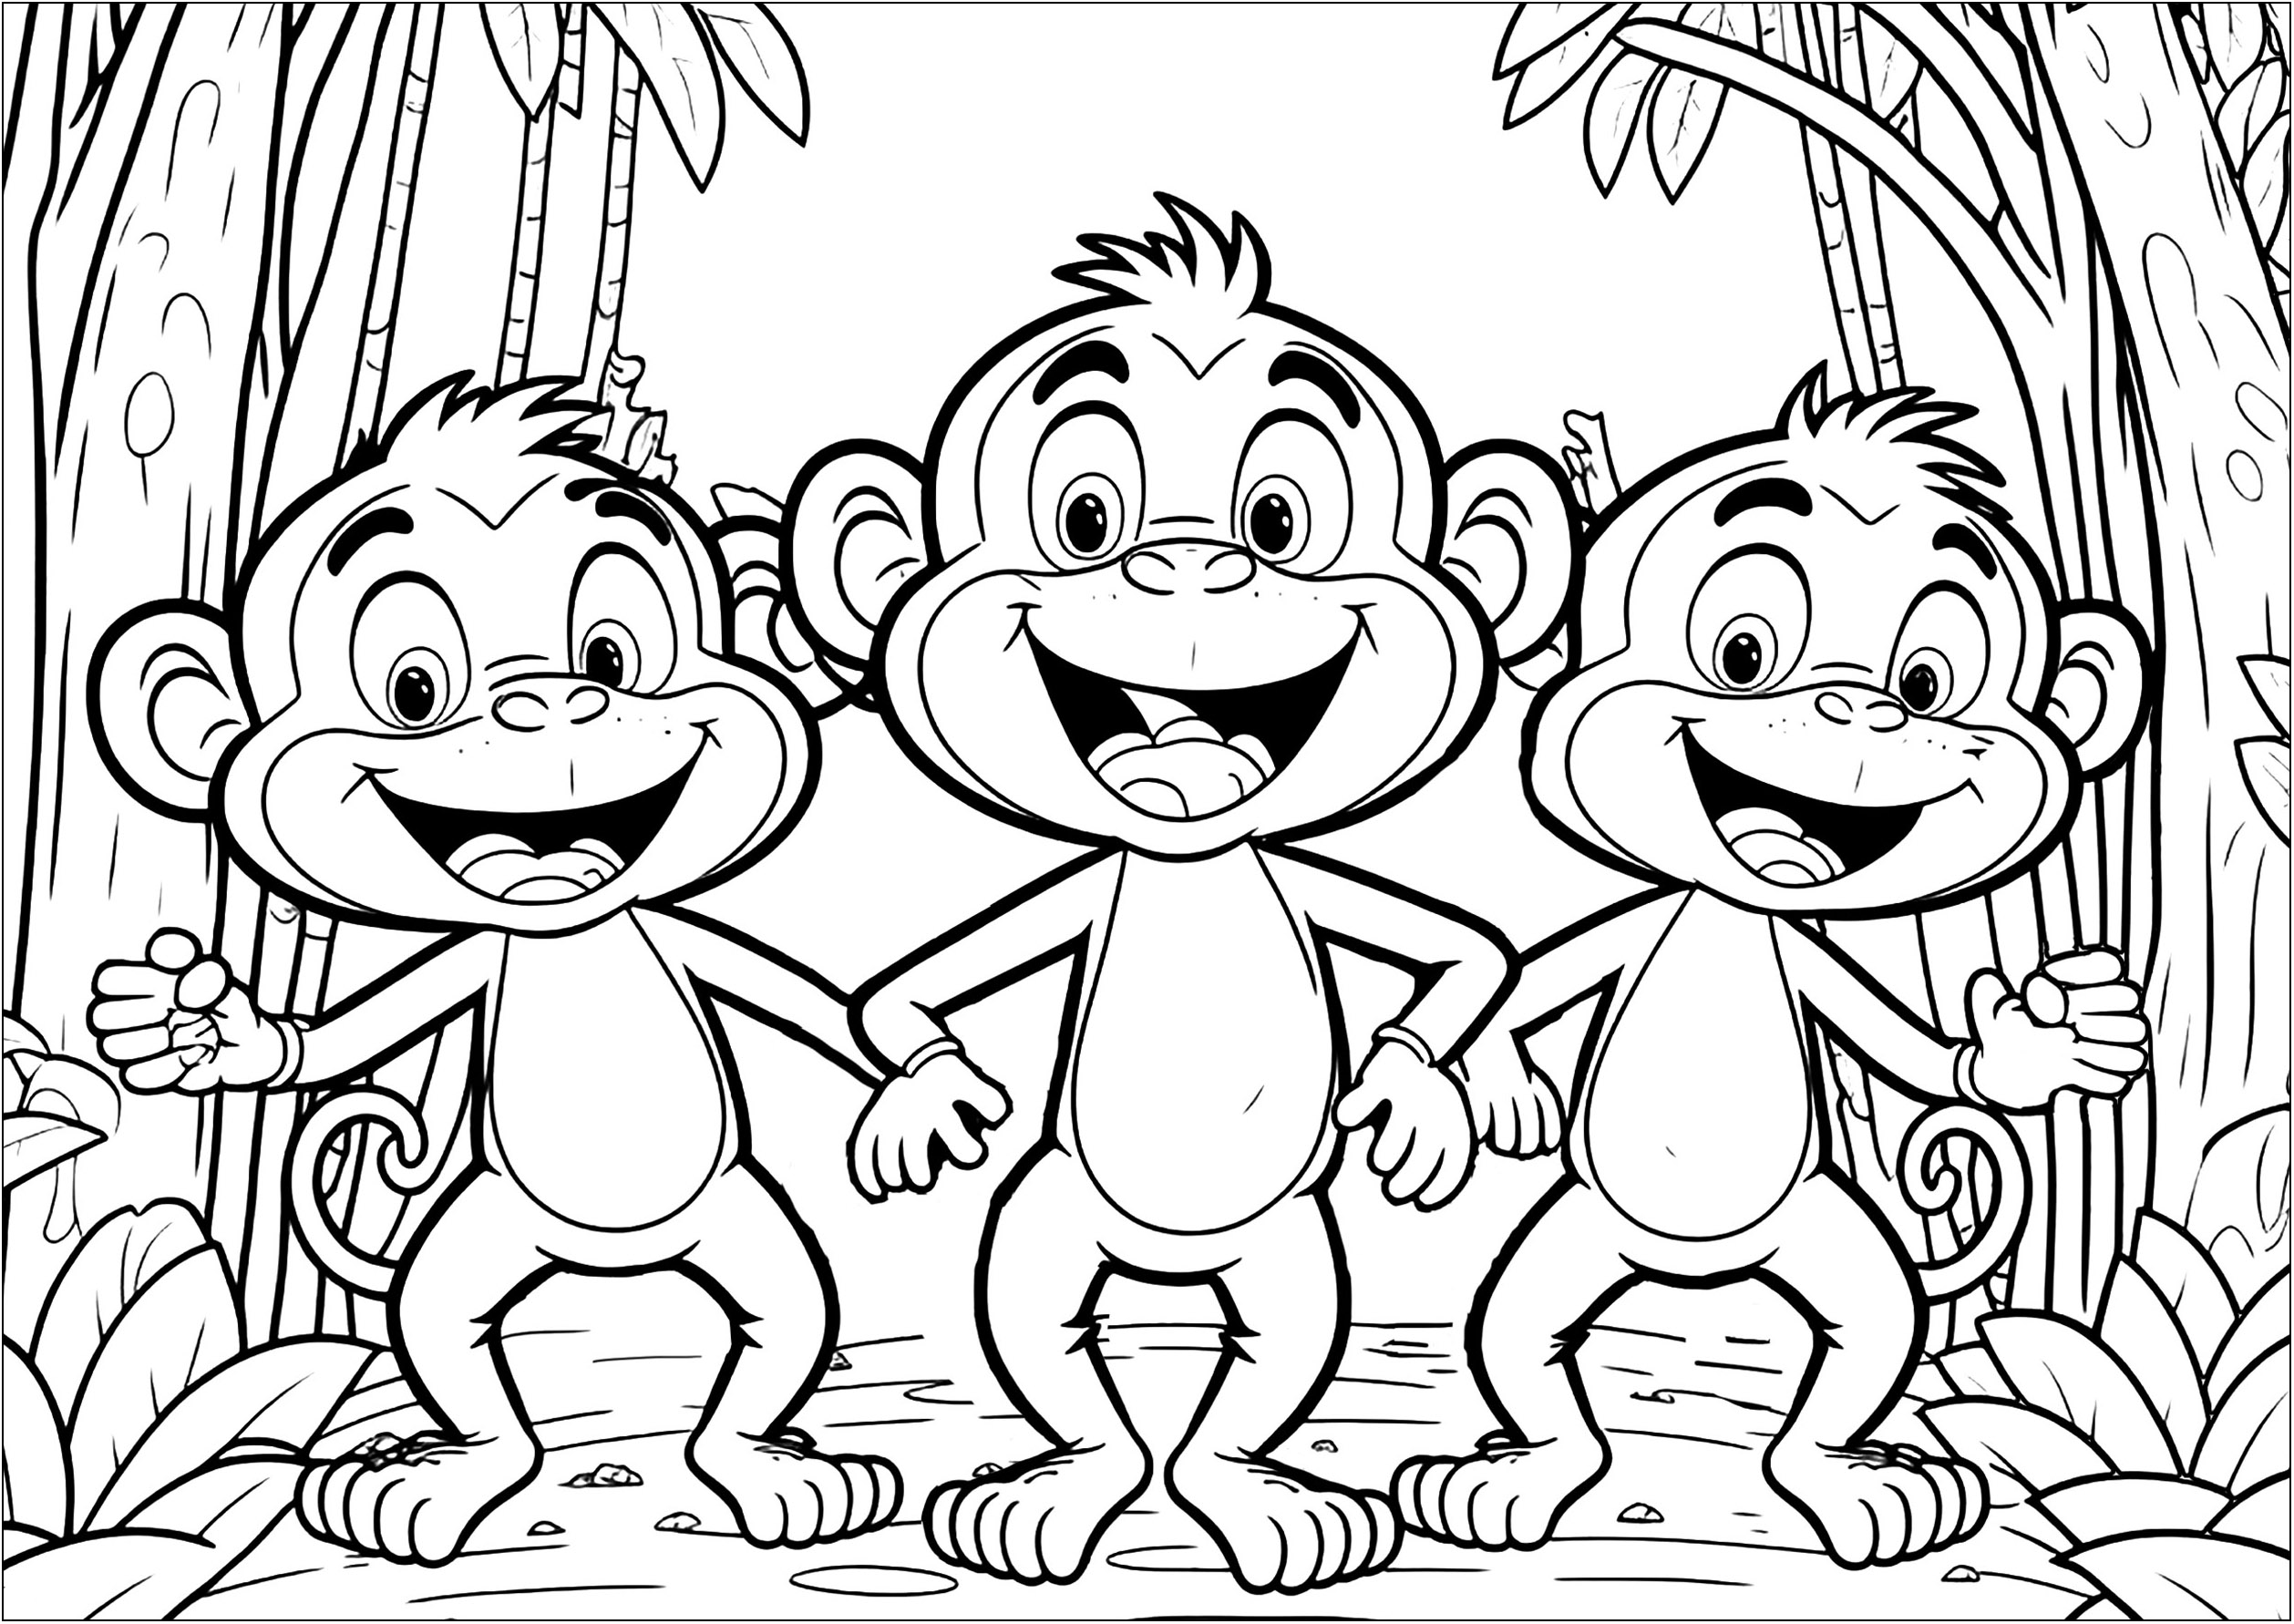 Três divertidos Macacos para colorir com cores vibrantes. As crianças podem aprender a misturar cores e usar a sua imaginação para criar uma obra de arte única.